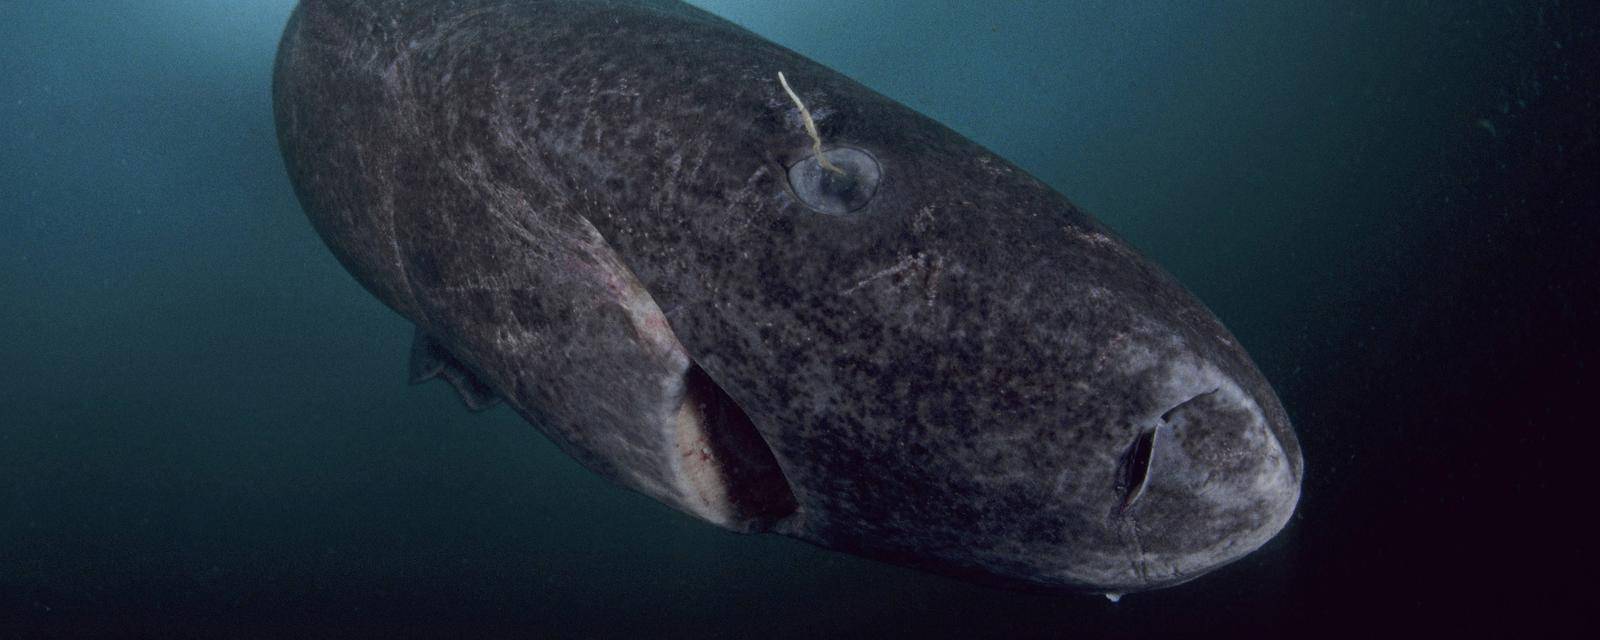 Scoperti squali della #Groenlandia di 400 anni